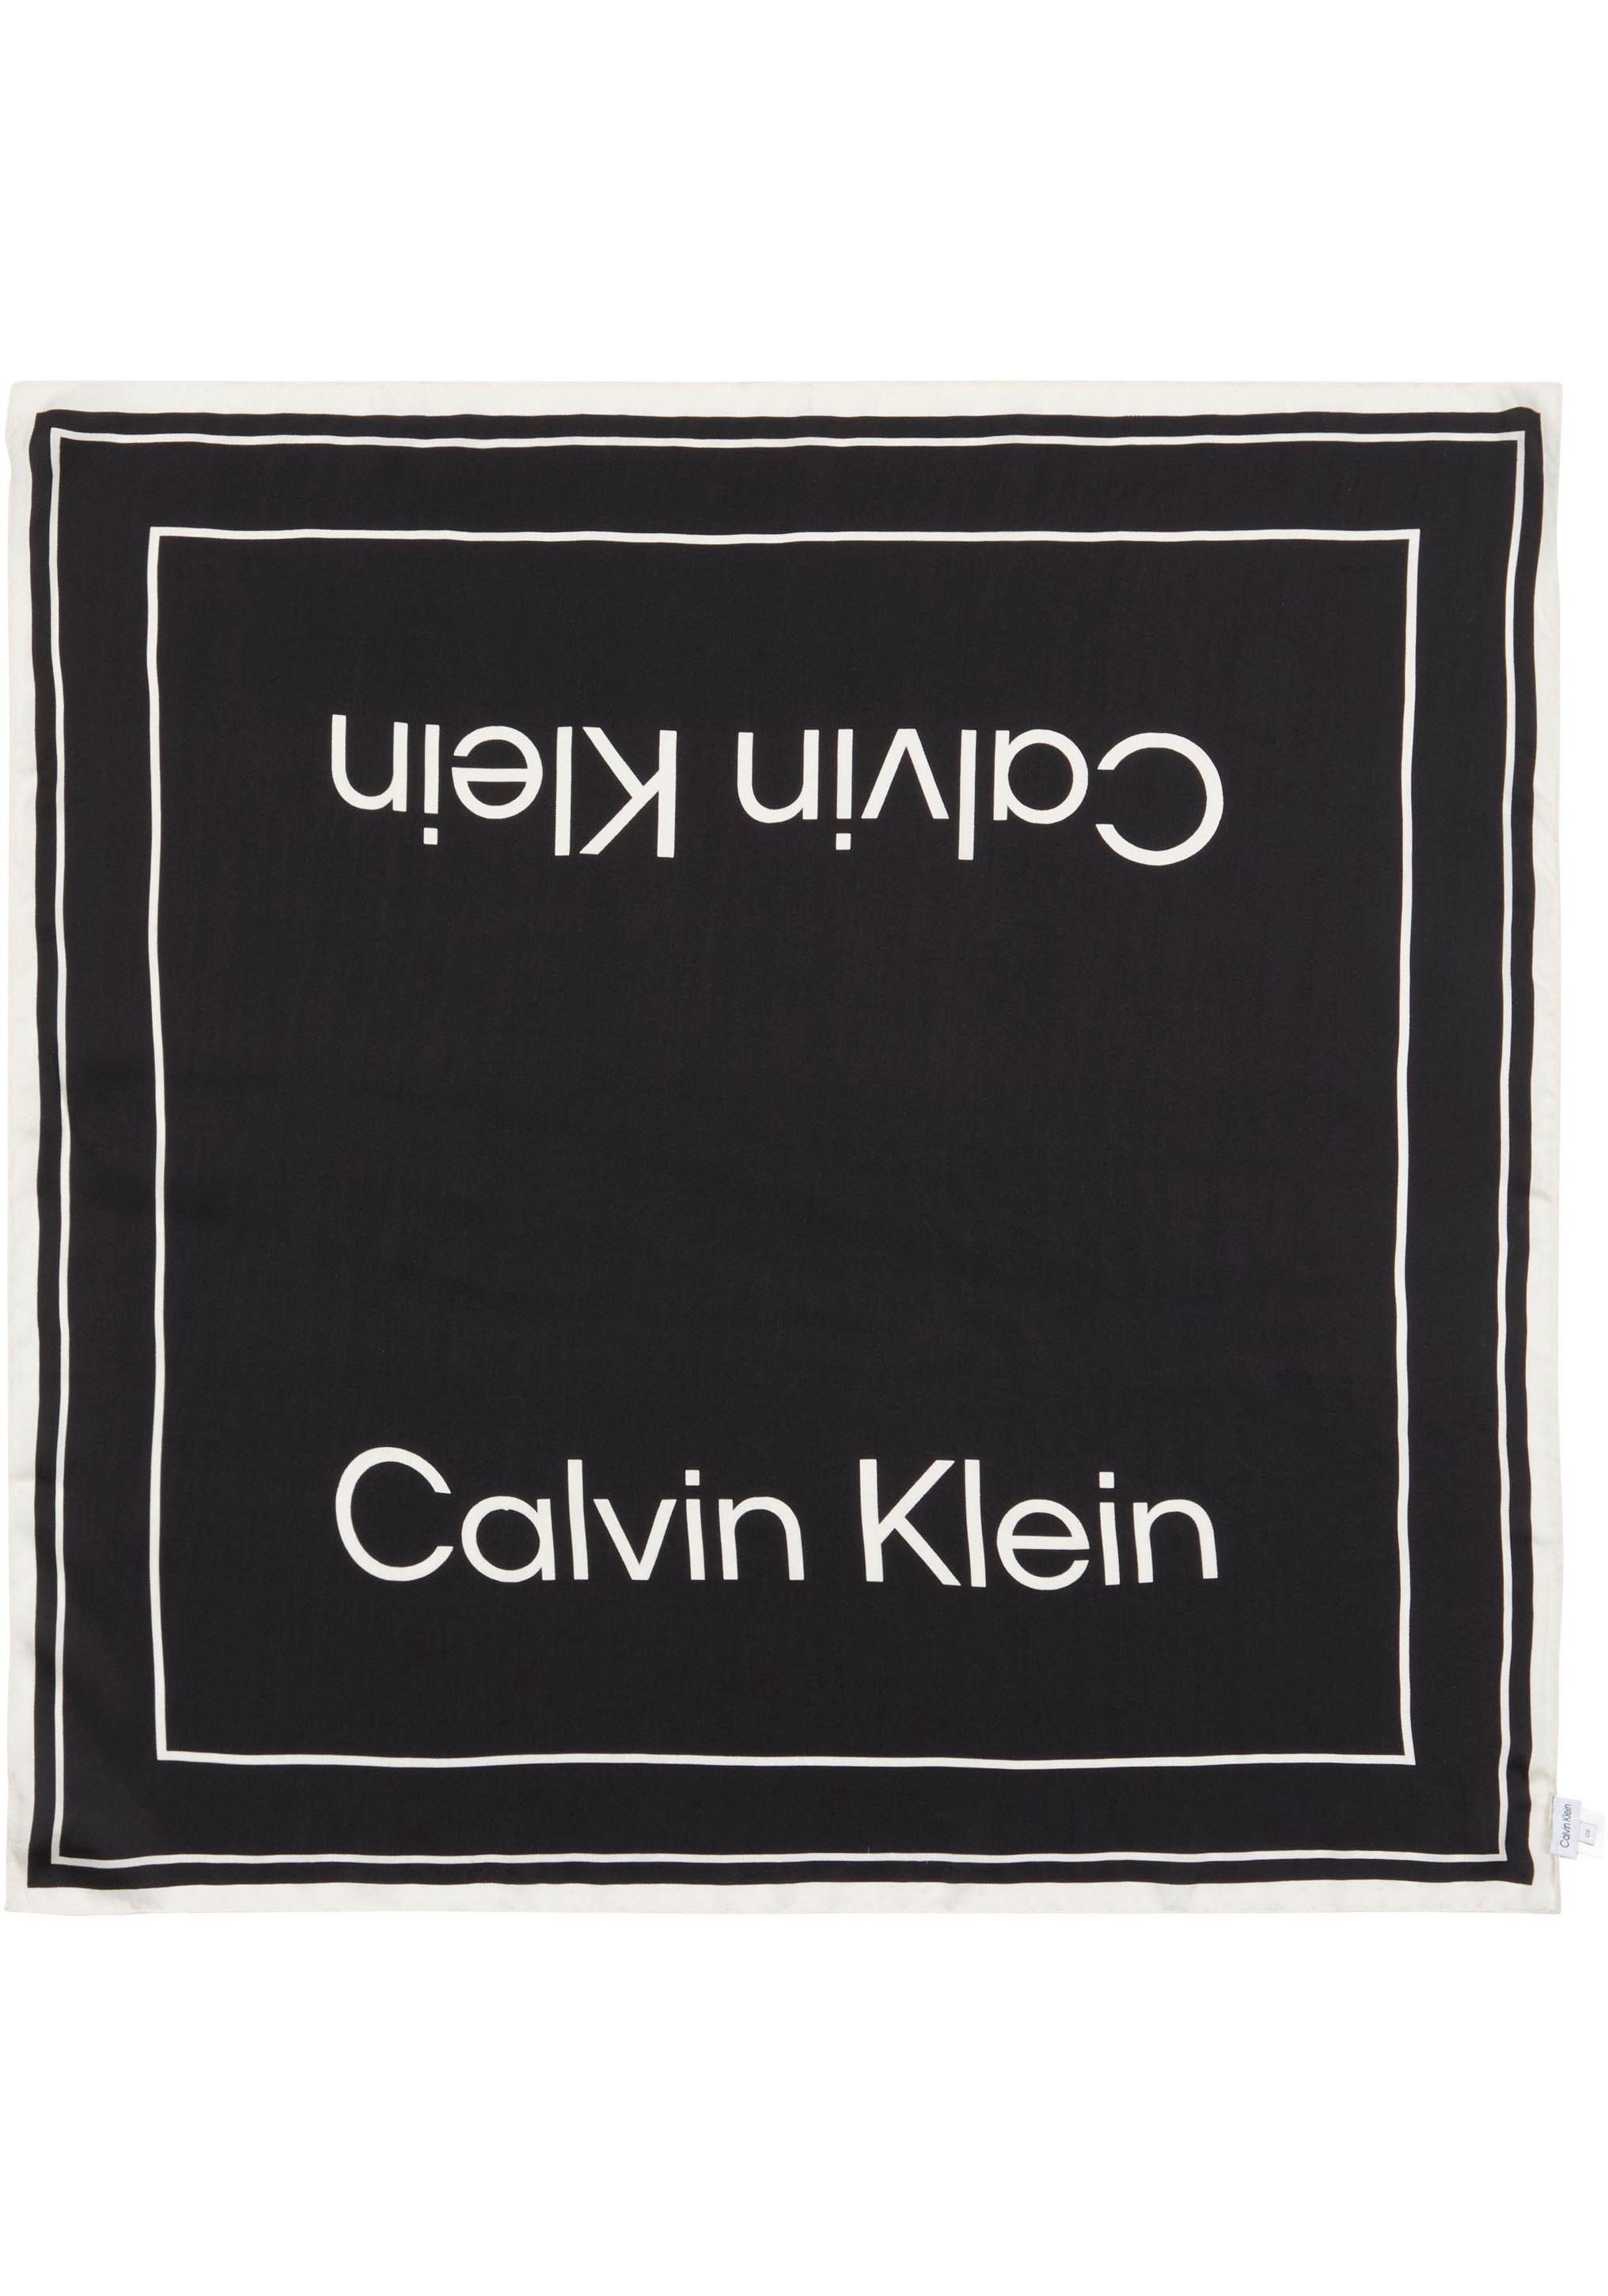 NY bestellen Seidenschal SILK BANDANA« BAUR »CK Klein | Calvin online